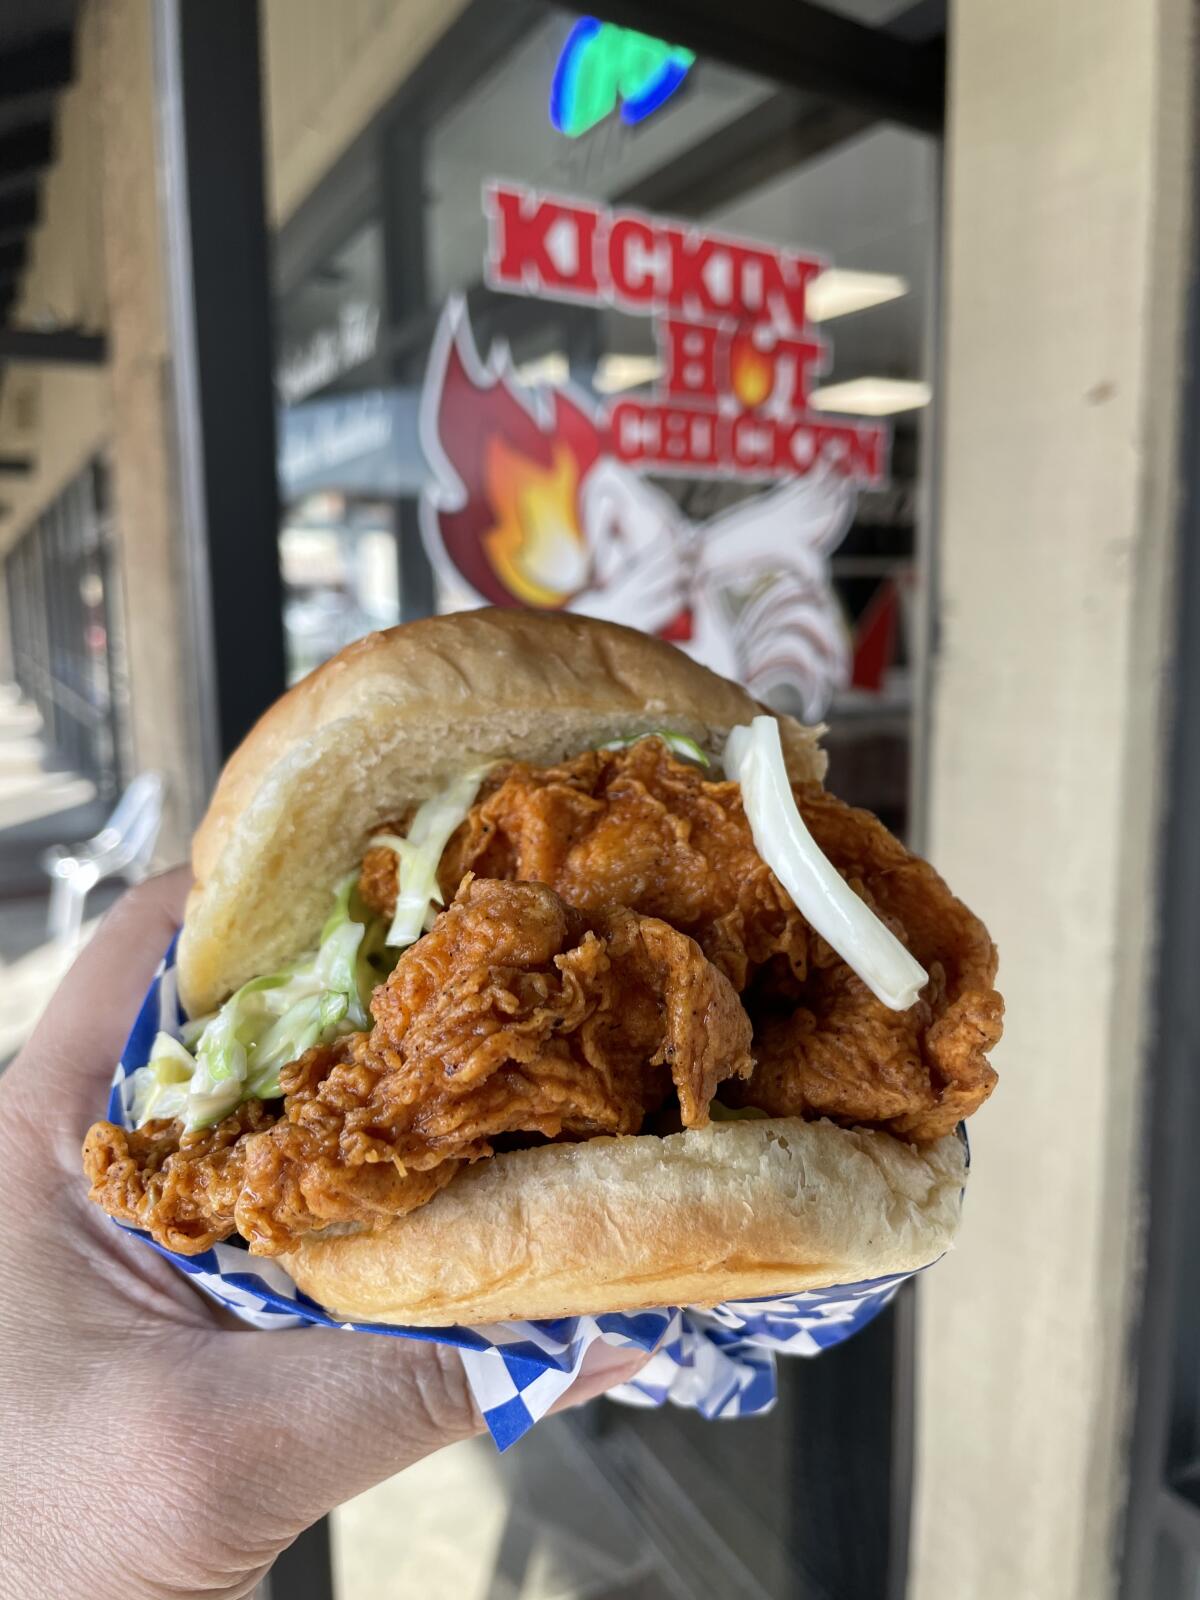 The Nashville Hot Chicken sando at Kickin’ Hot Chicken in Anaheim.